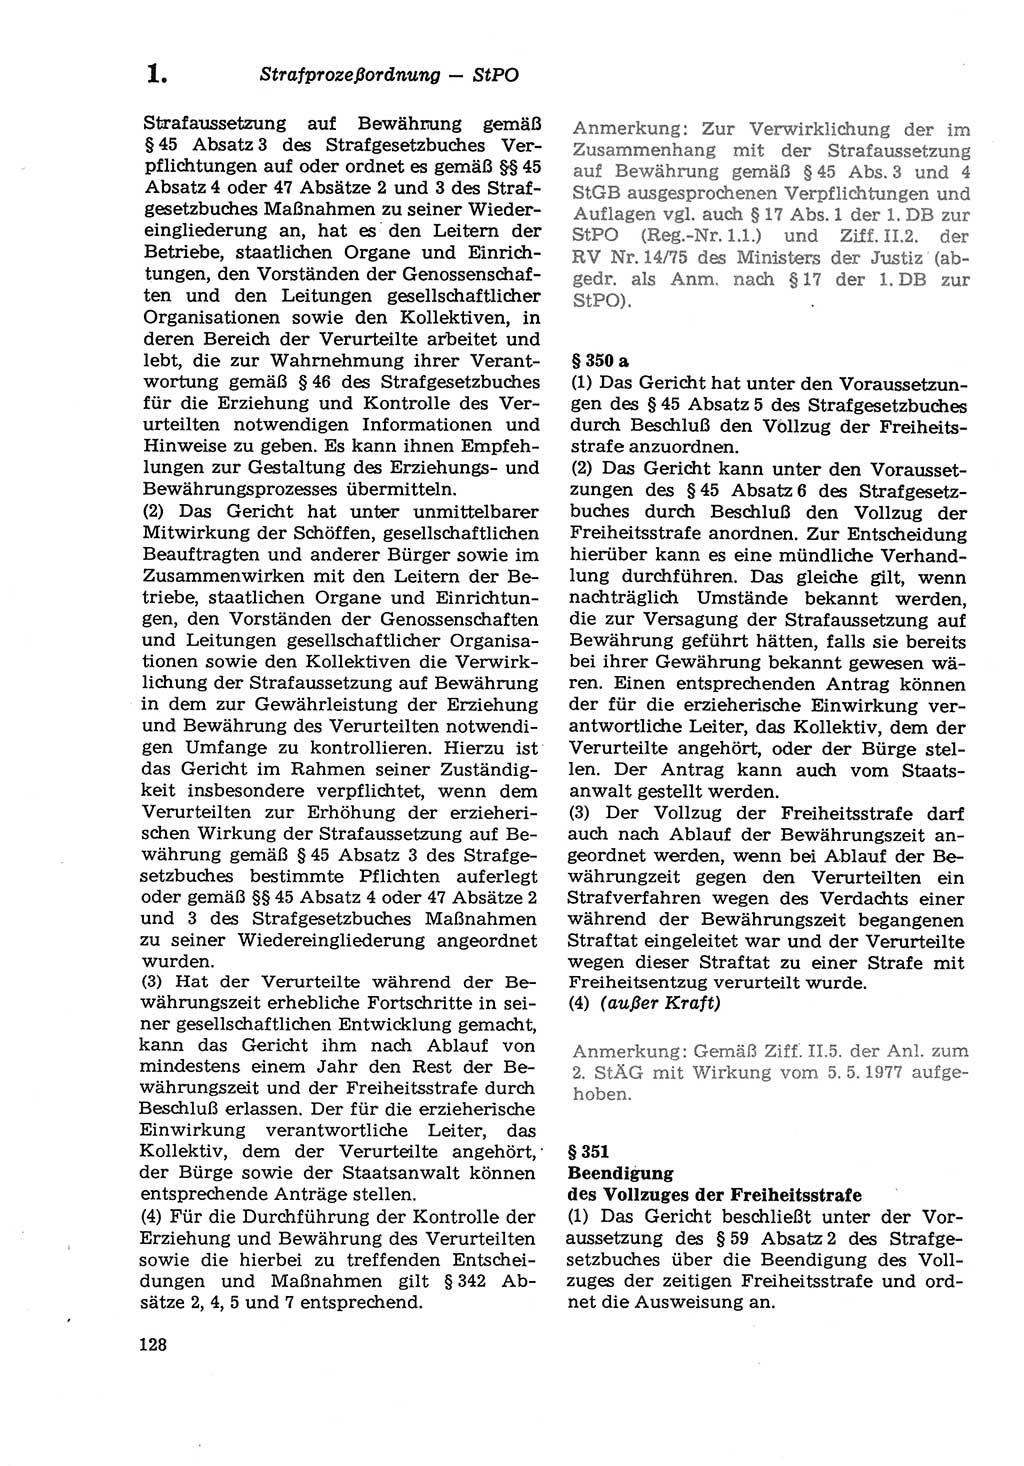 Strafprozeßordnung (StPO) der Deutschen Demokratischen Republik (DDR) sowie angrenzende Gesetze und Bestimmungen 1979, Seite 128 (StPO DDR Ges. Best. 1979, S. 128)